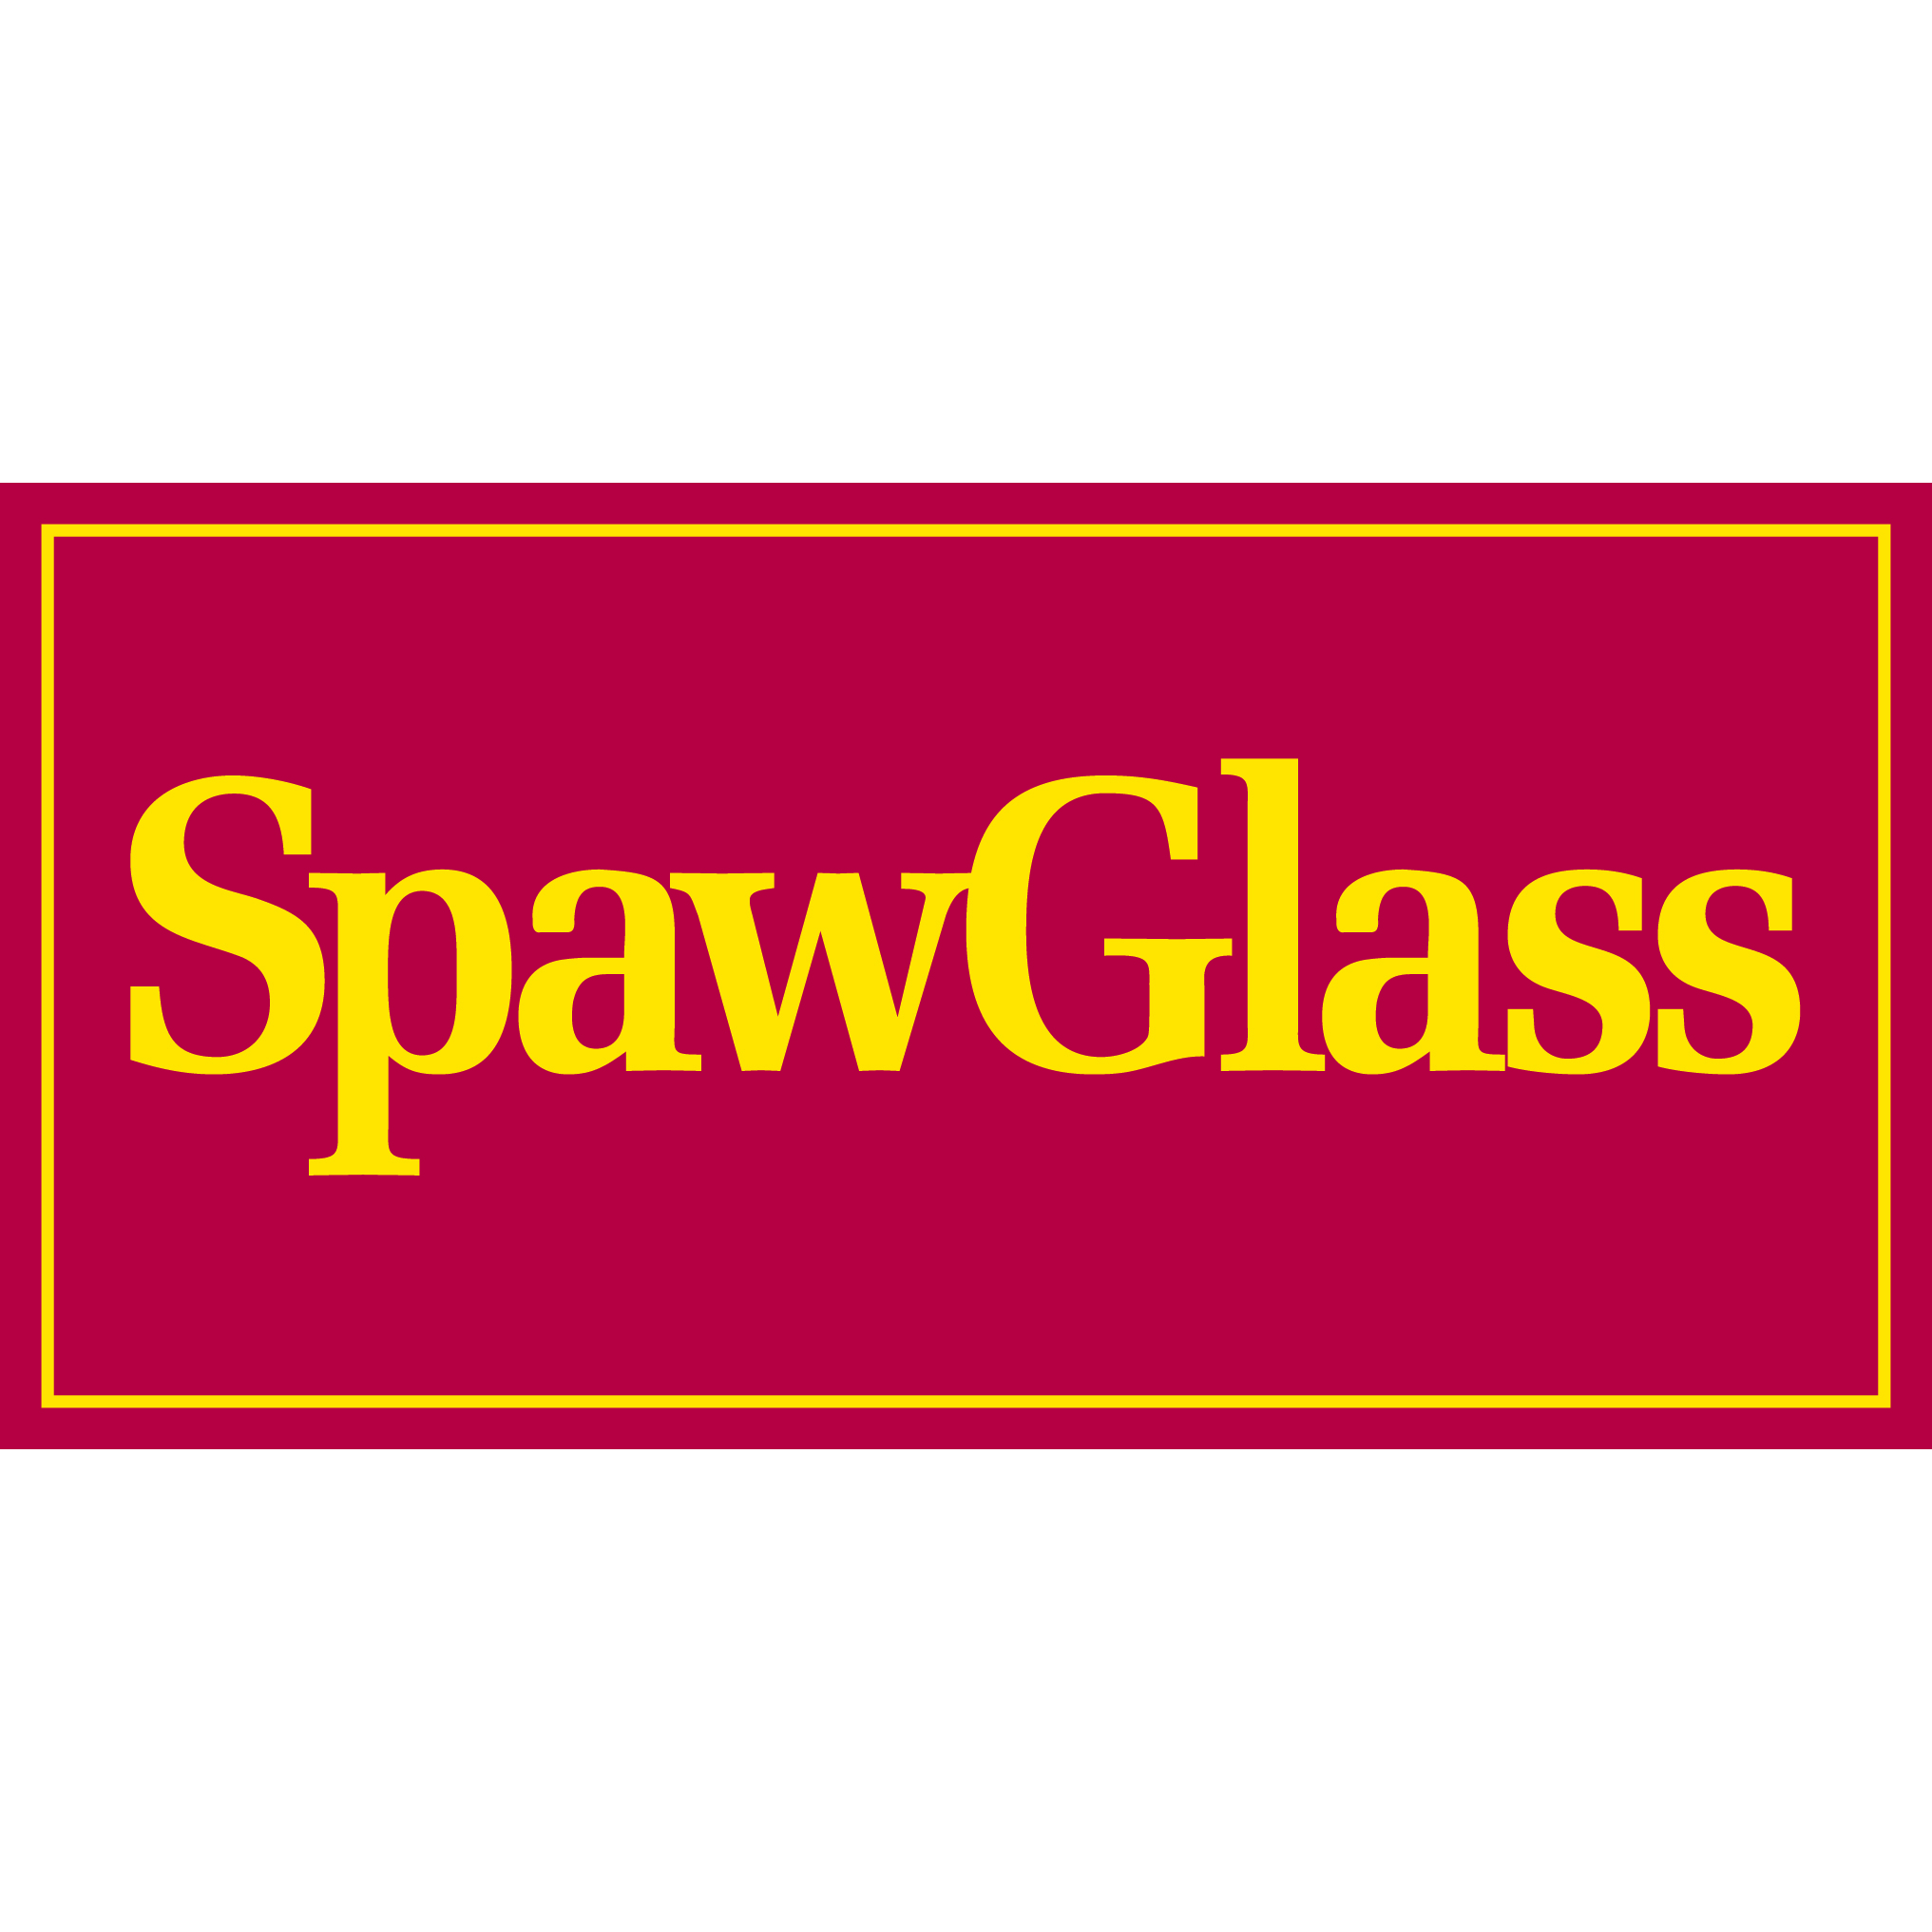 SpawGlass logo